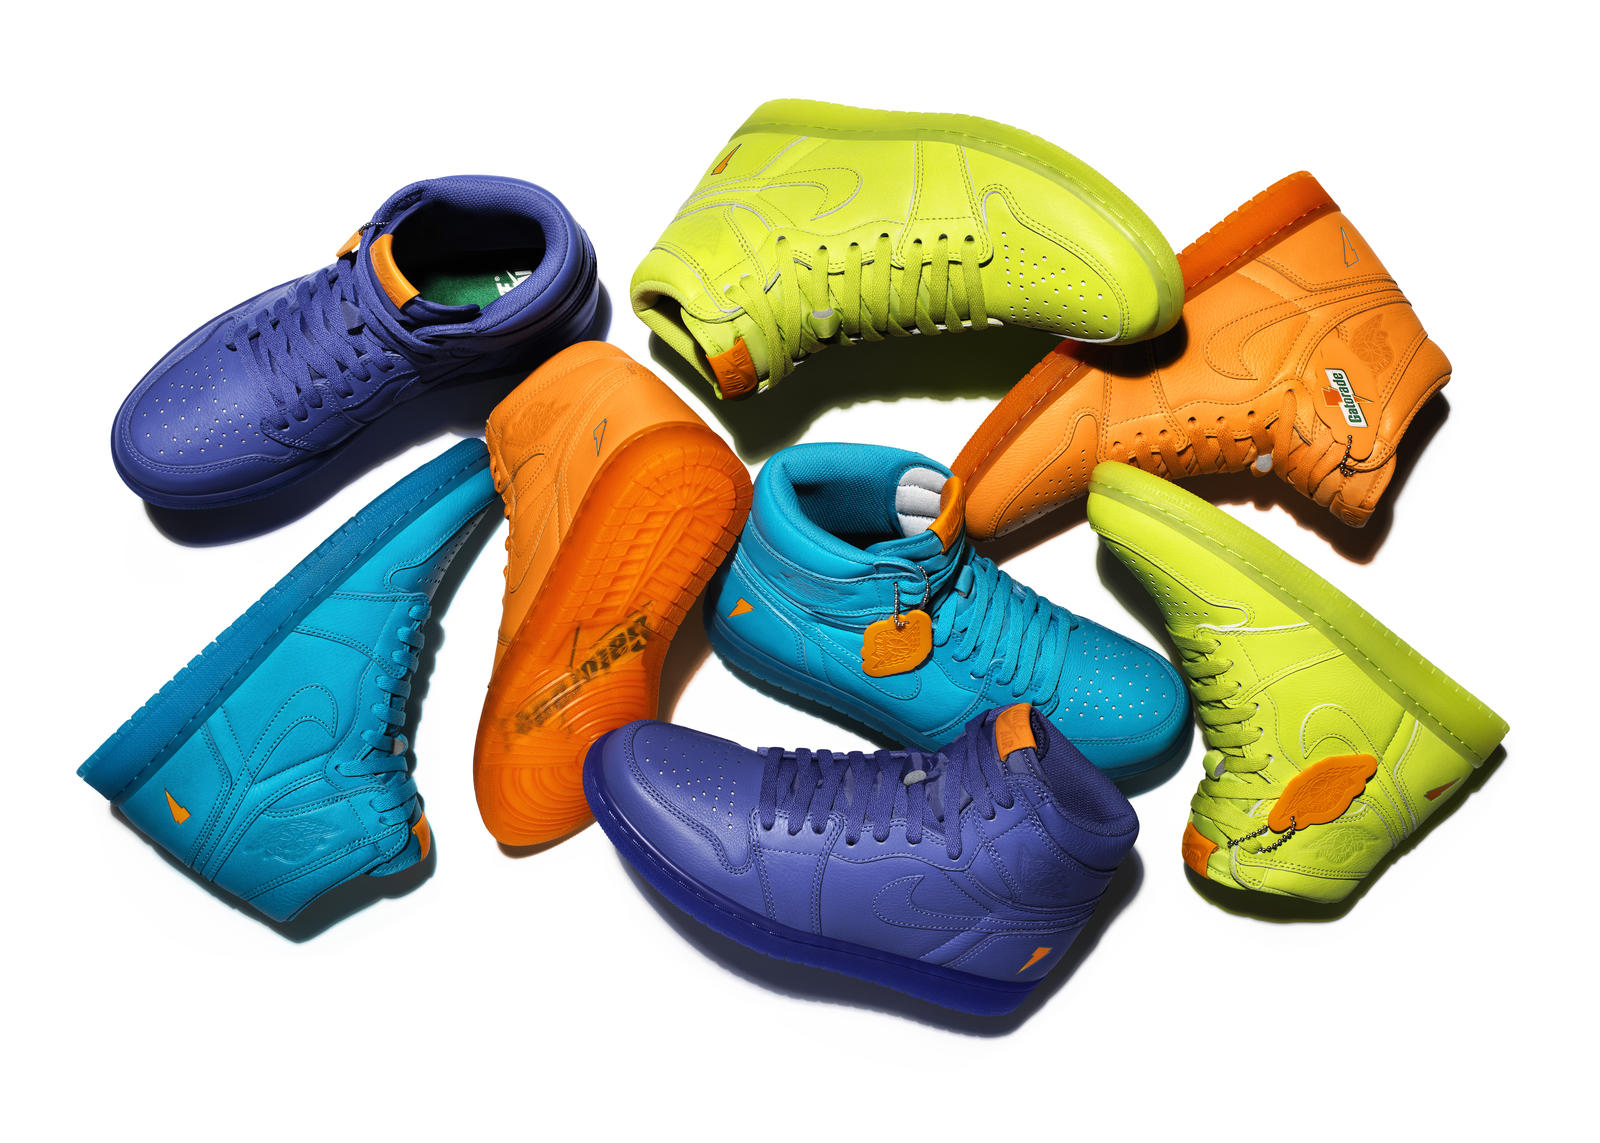 Sneakers pack delle quattro colorway della collabo Air Jordan 1 x Gatorade